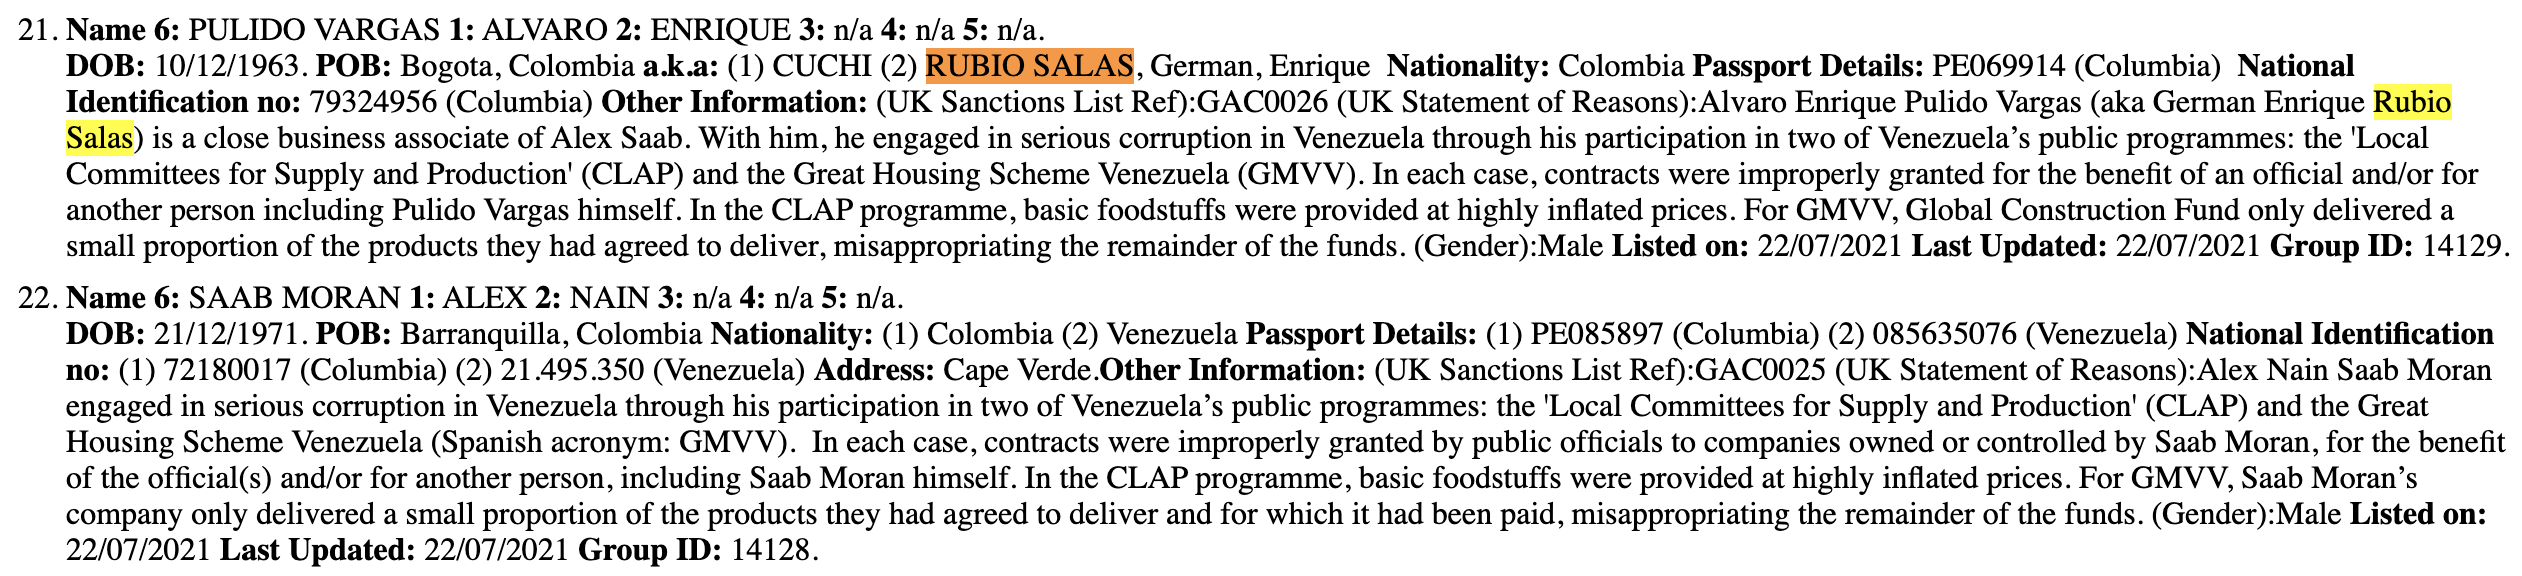 UK Sanctions List: German Enrique Rubio Salas